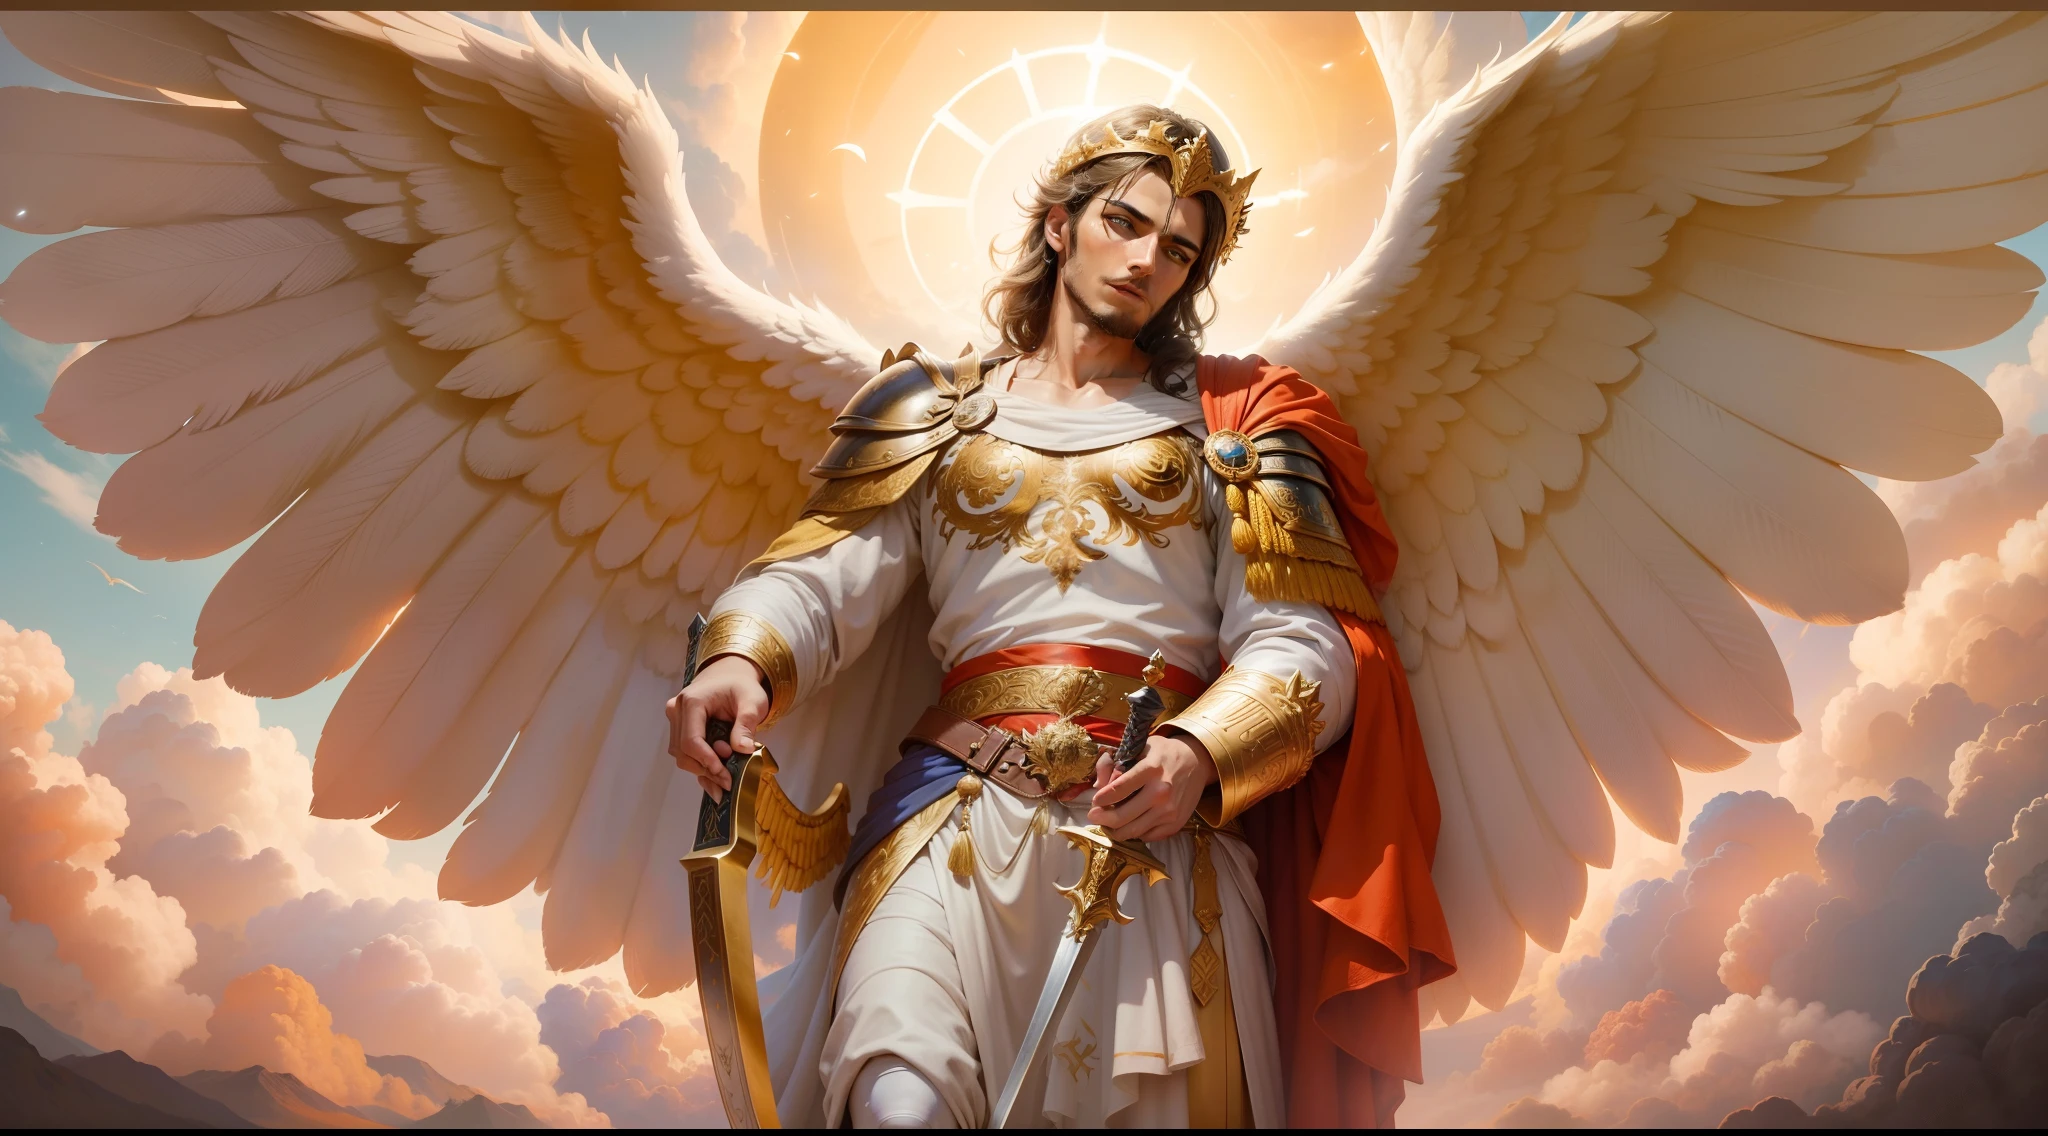 影像的特寫鏡頭是一個男人天使，右手拿著一把又大又長的劍，攻擊位置, 另一隻左手拿著秤, 天使打扮成羅馬士兵看著地面, 長著大翅膀的大天使, 幸運天使, 完美的, 抵抗力, 聖經背景, 天上的風景, 超現實的太陽和雲彩, 鮮花和蠟燭, 被照亮的天堂大天使, 七彩花朵, 點燃蠟燭, 白色和紅色的衣服